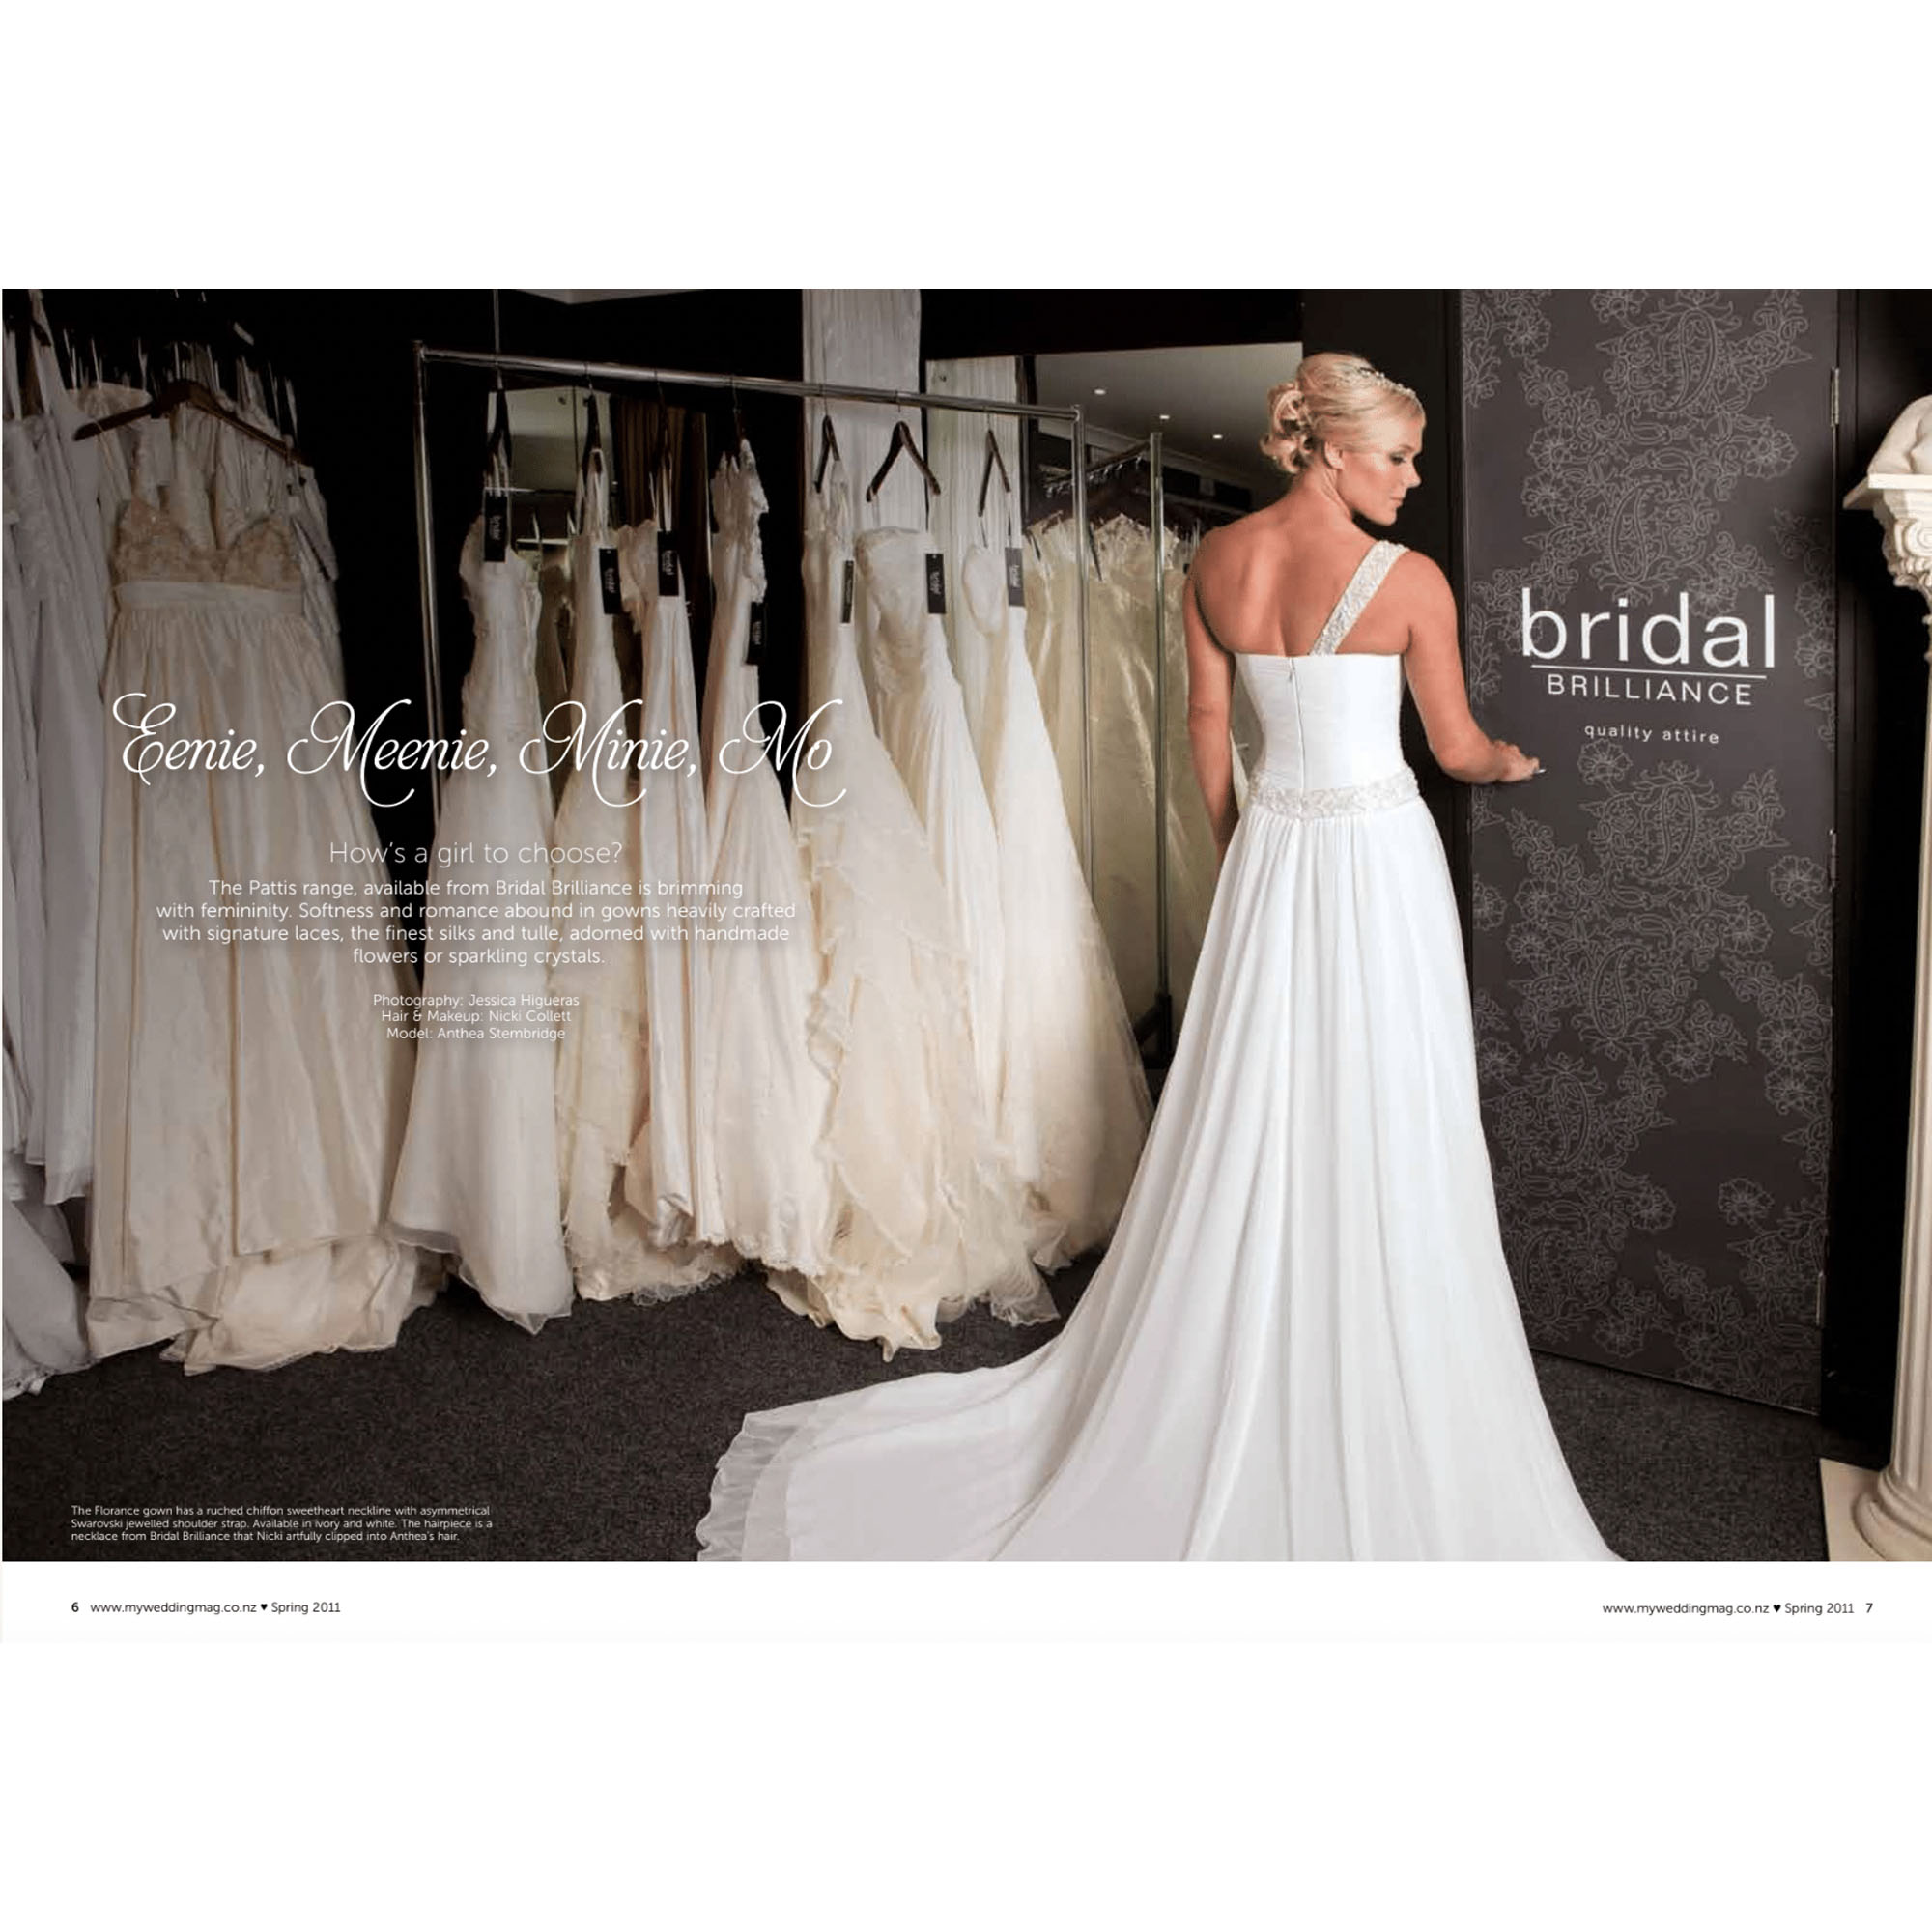 Bridal Store Photoshoot